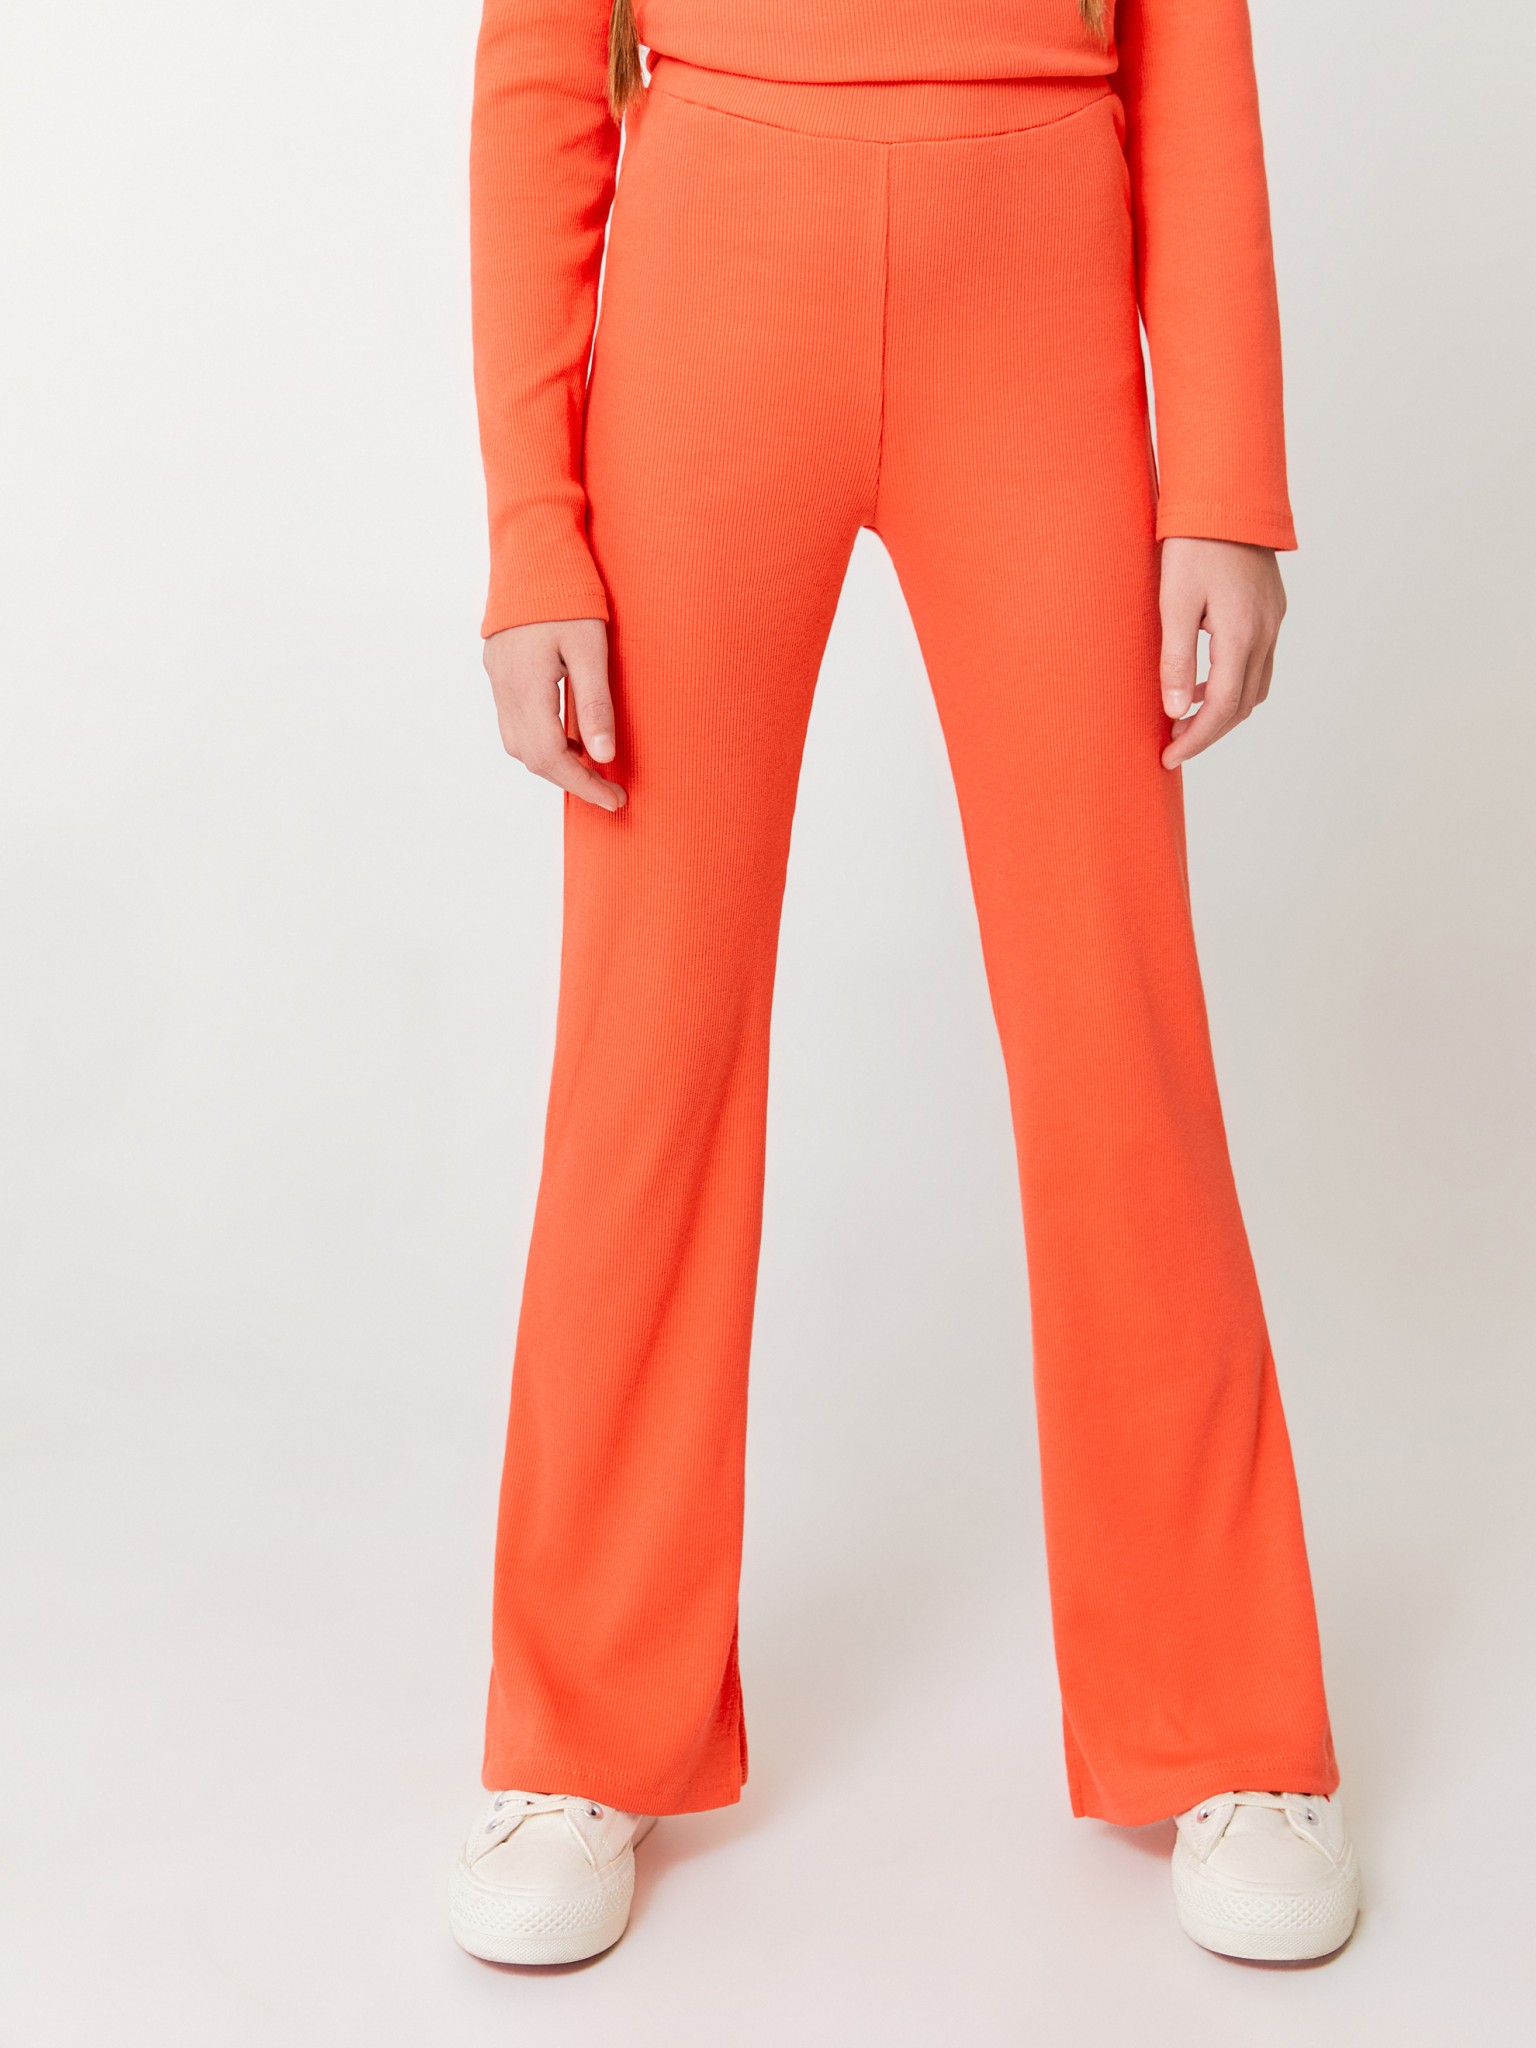 Брюки в рубчик ACOOLA 20200160011, оранжевый, 146 брюки утепленные мужские protest оранжевый